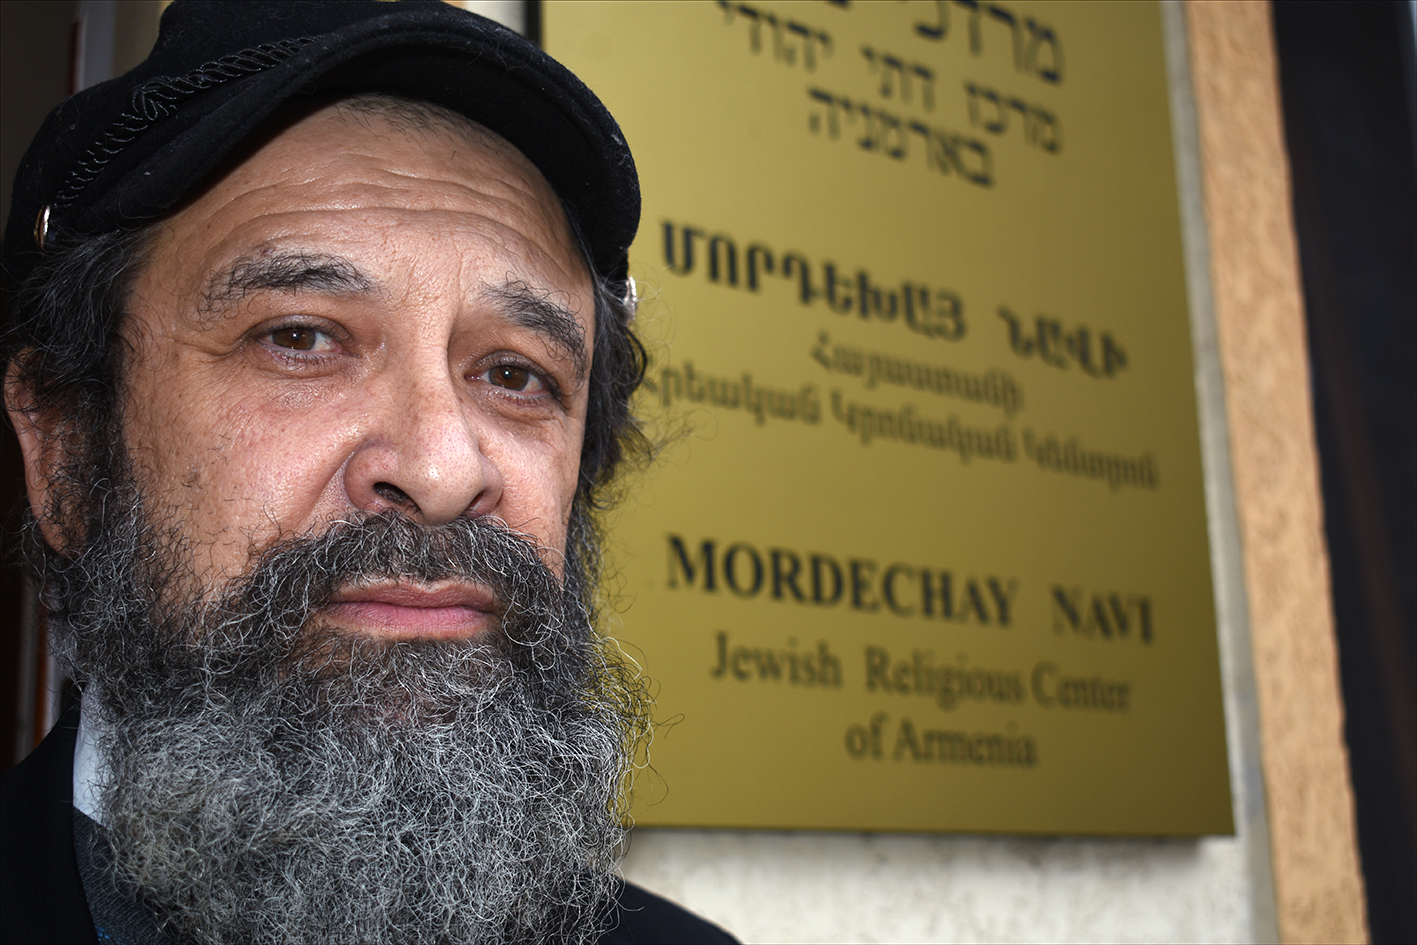 Le rabbin Gershon Burshteyn, chef spirituel du centre religieux juif Mordechay Navi d'Arménie, vu à l'extérieur du centre qu'il dirige. (Crédit : Larry Luxner)